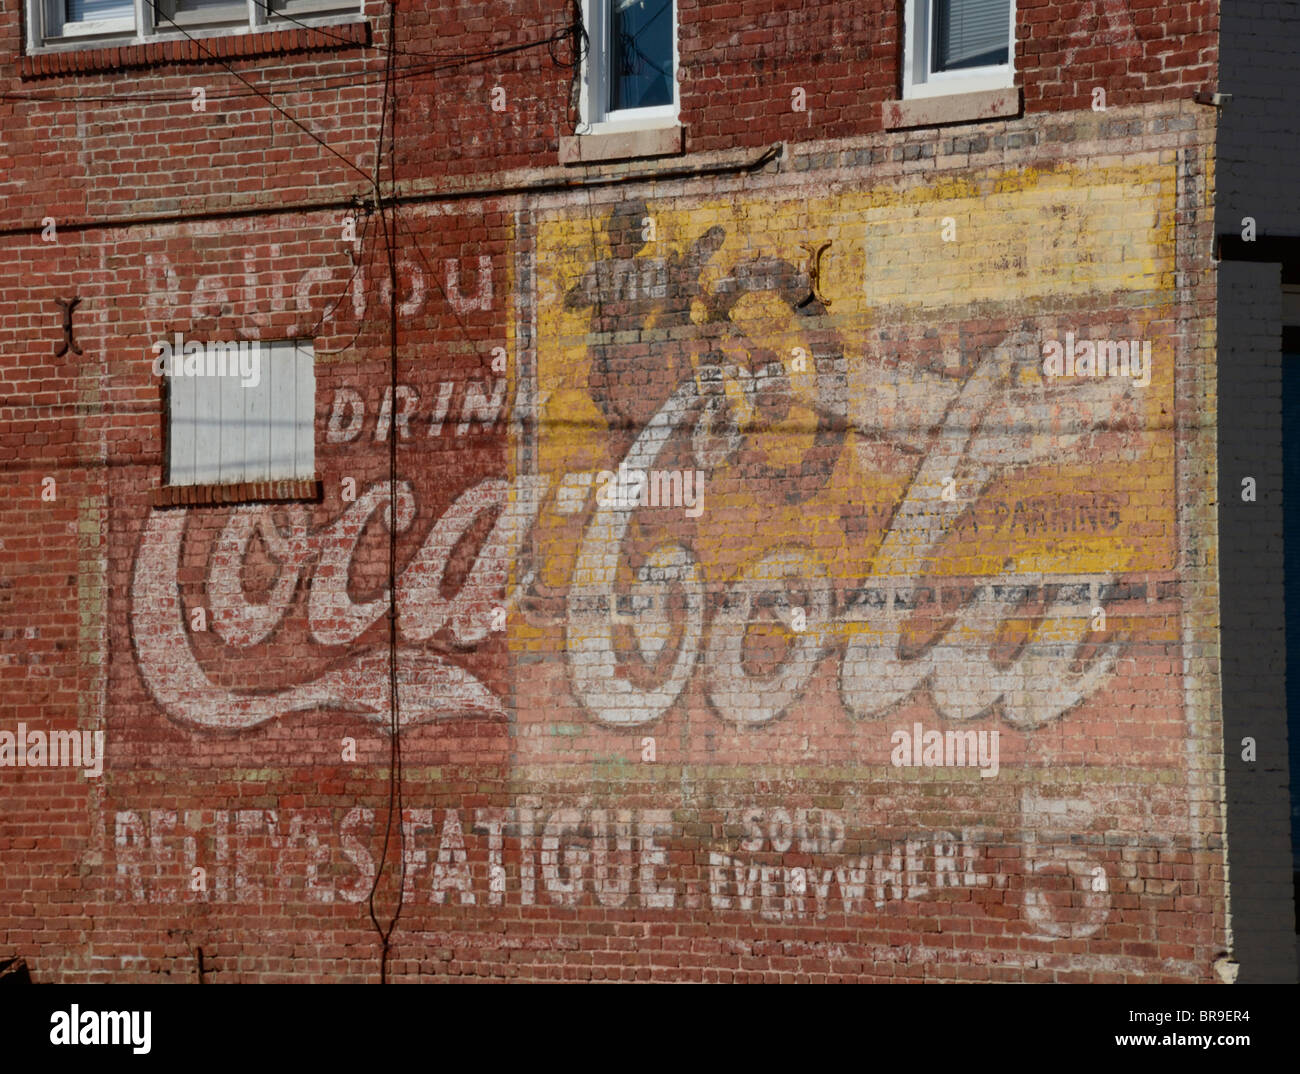 Sehr alte Werbung für Coca-Cola und Yamaha Motorräder auf Seite von einem alten Backsteingebäude gemalt. Stockfoto